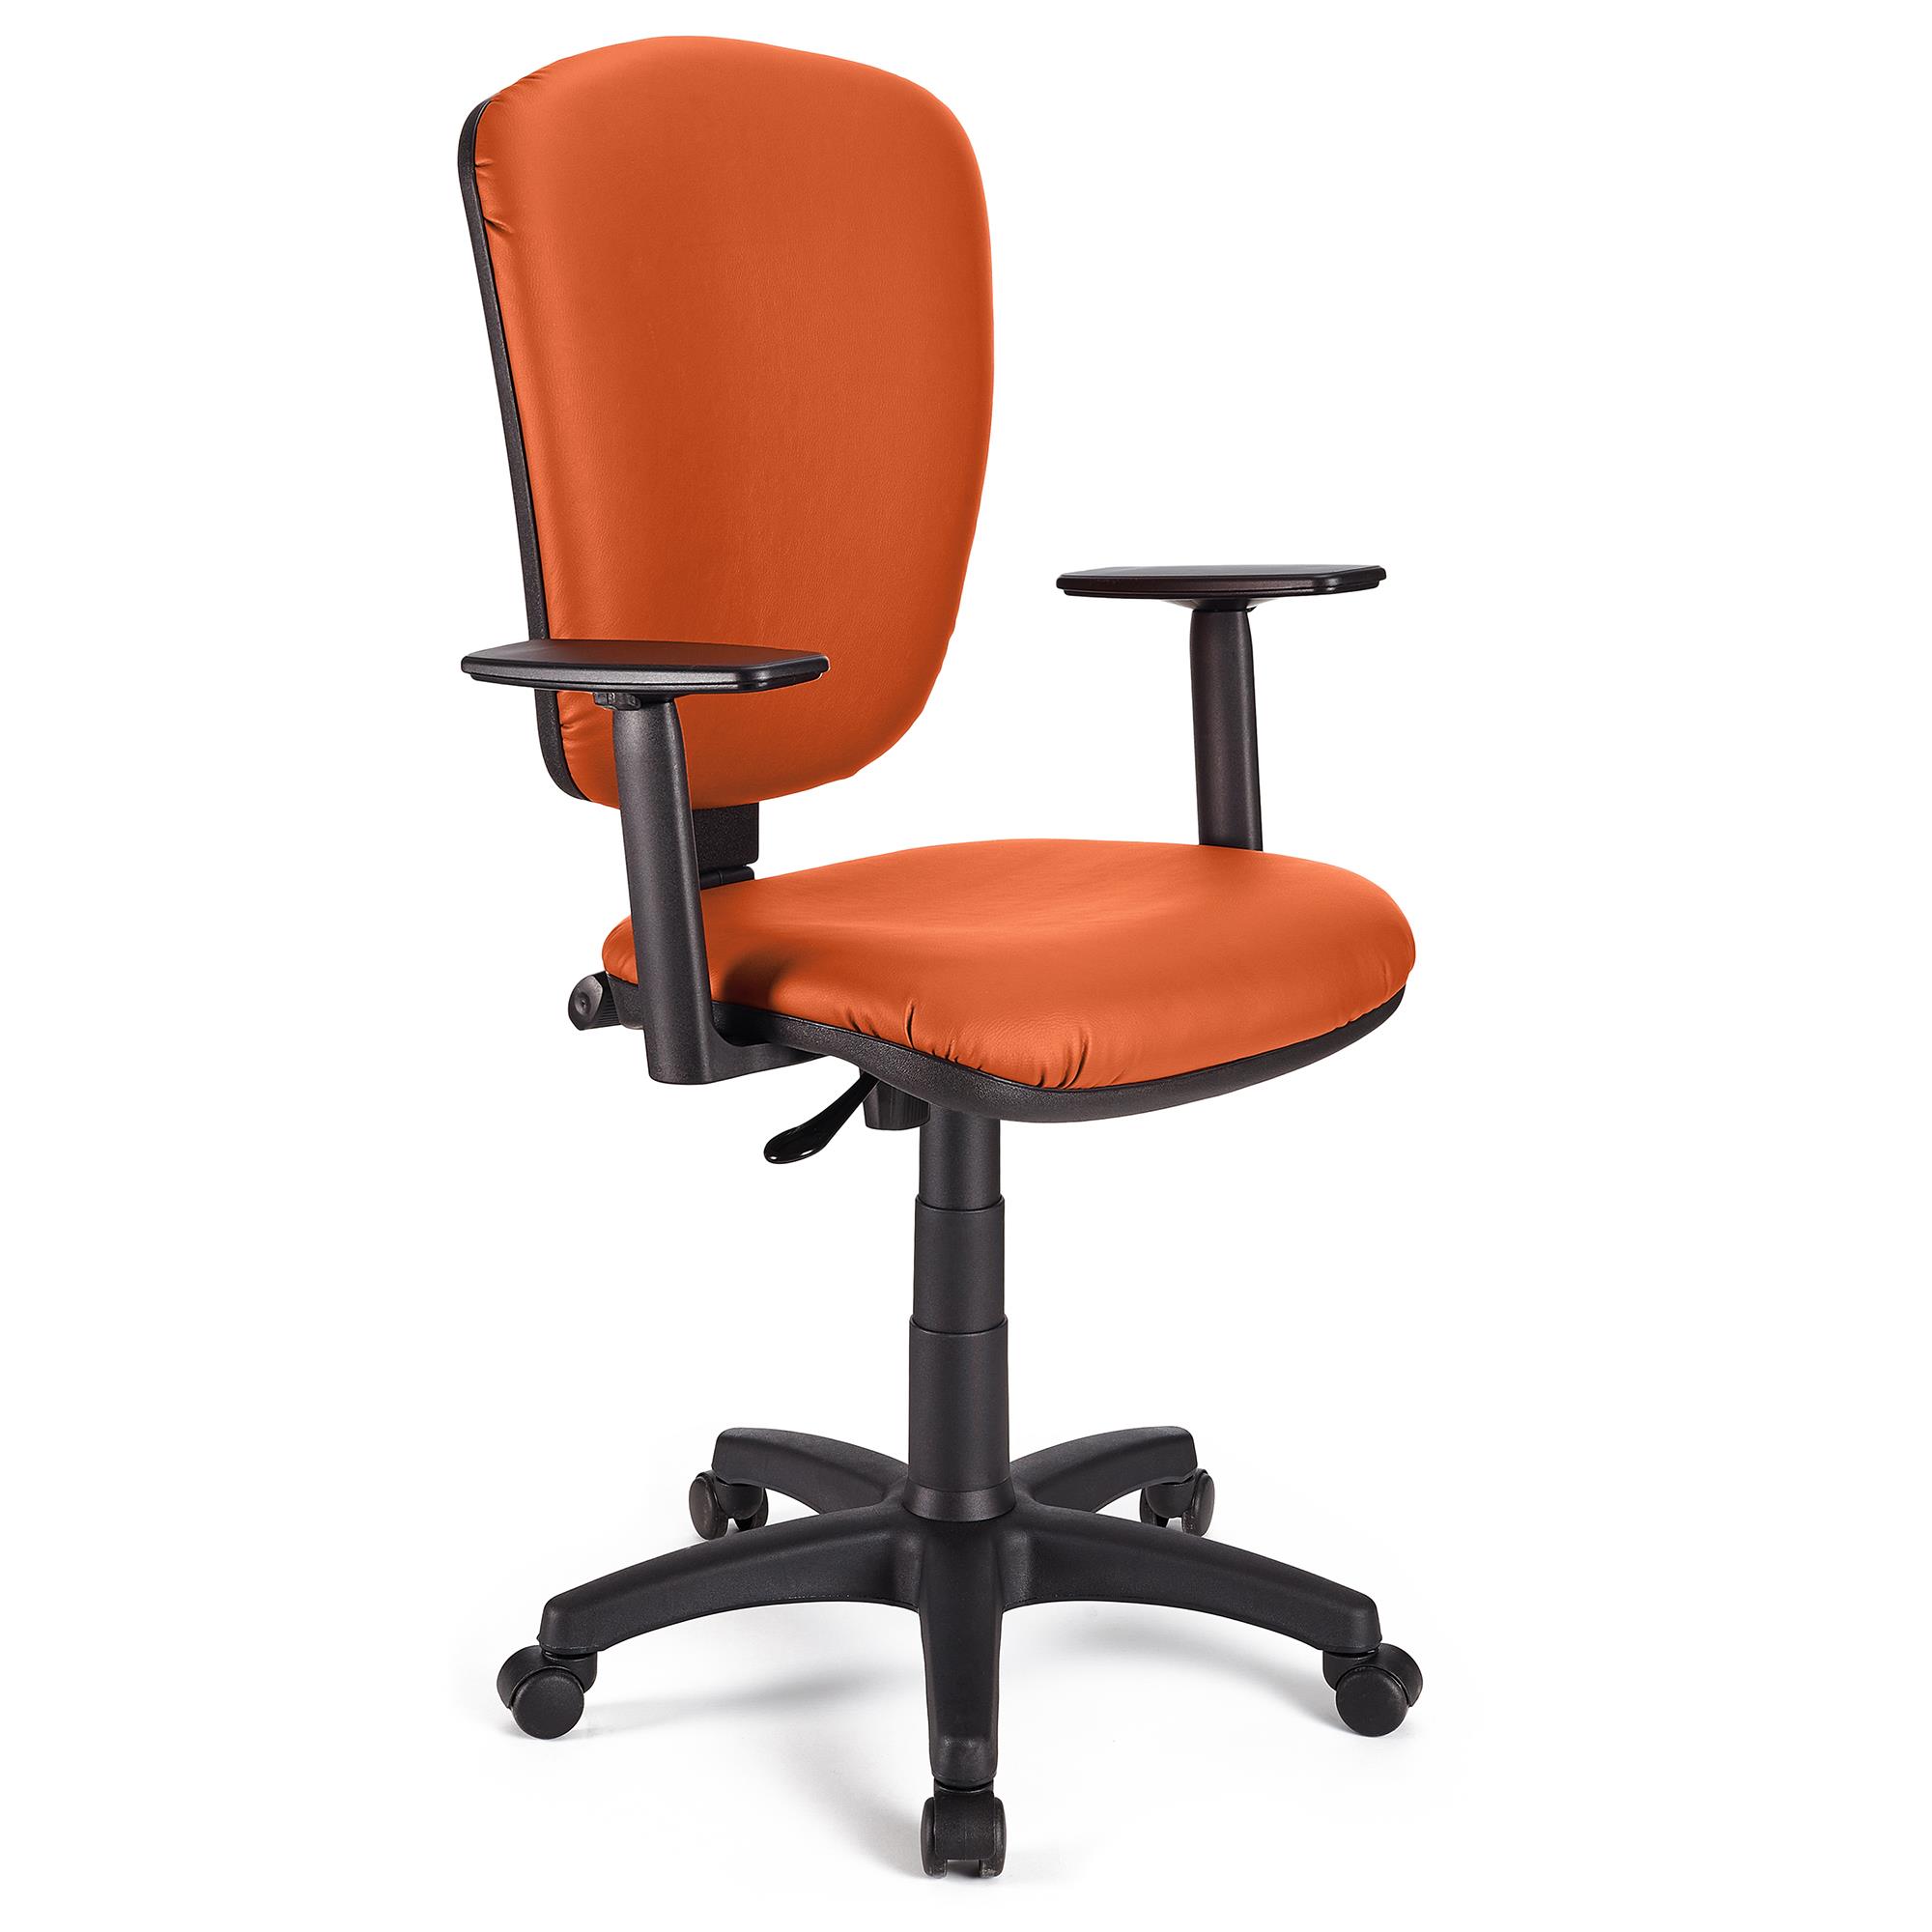 Bürostuhl KALIPSO PLUS LEDER, verstellbare Rücken- und Armlehnen, robust, Farbe Orange